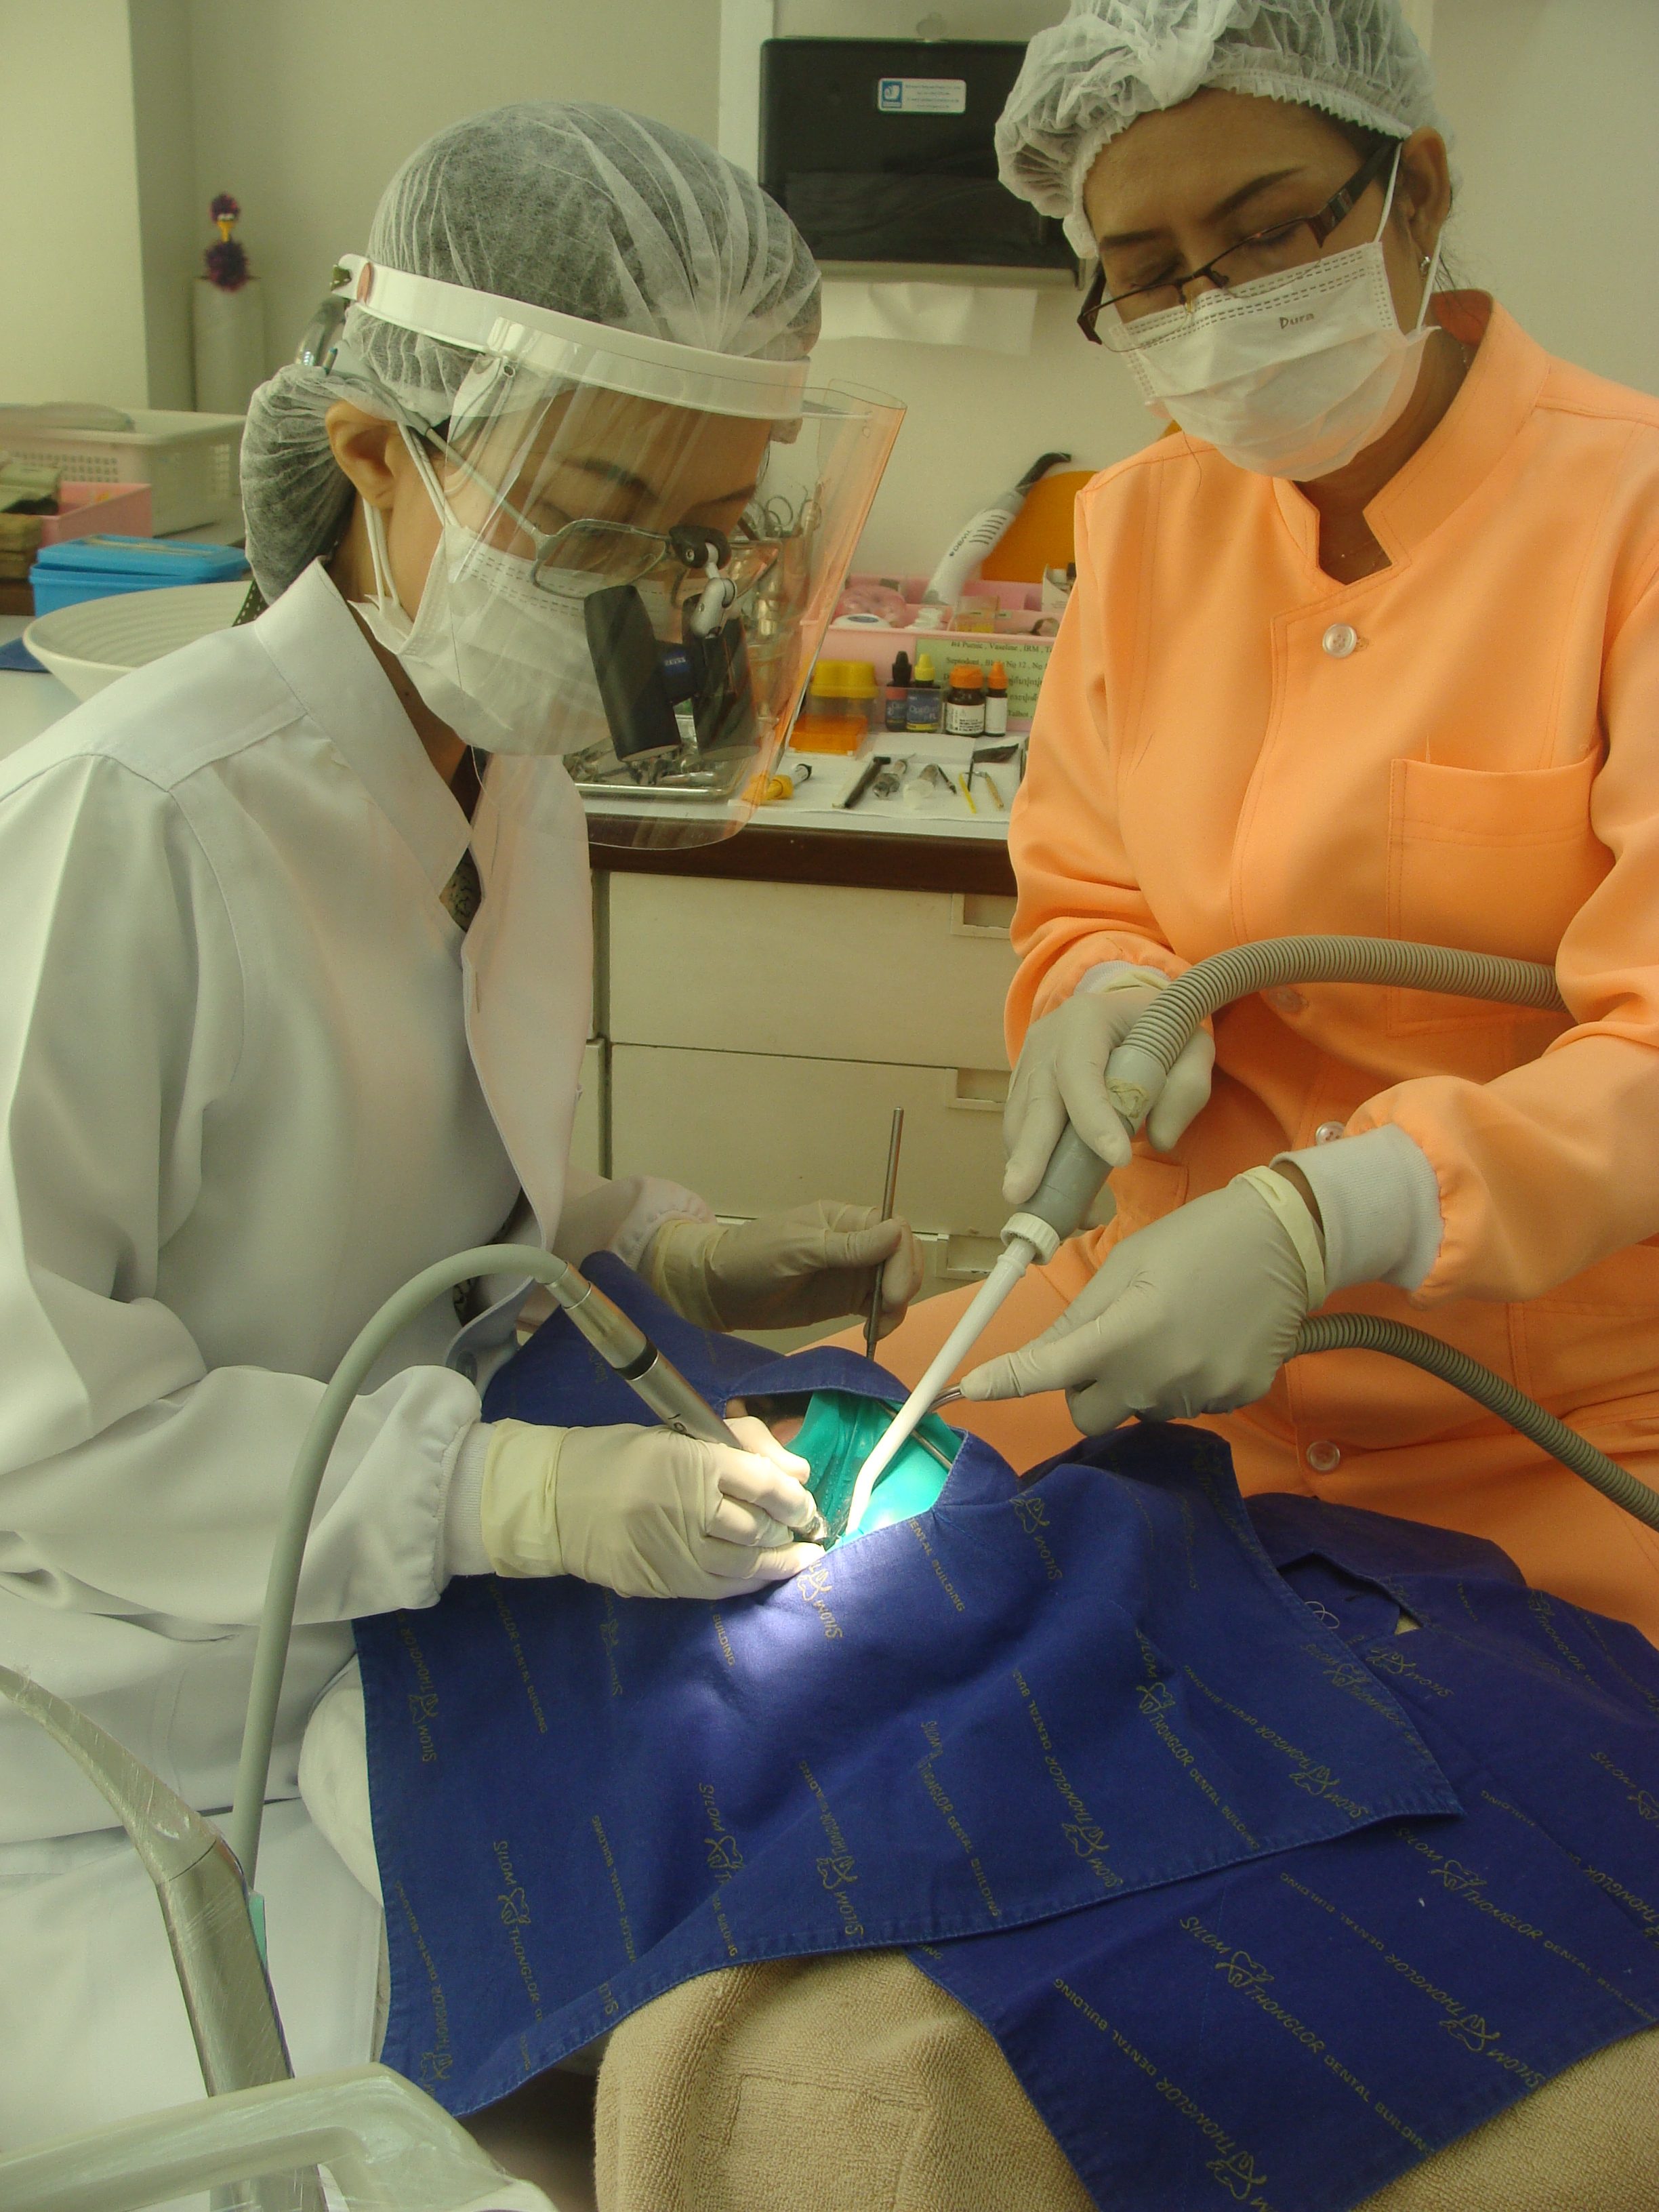 器具を毎回滅菌しない歯科医もいる日本、毎回滅菌・交換するタイの歯科医